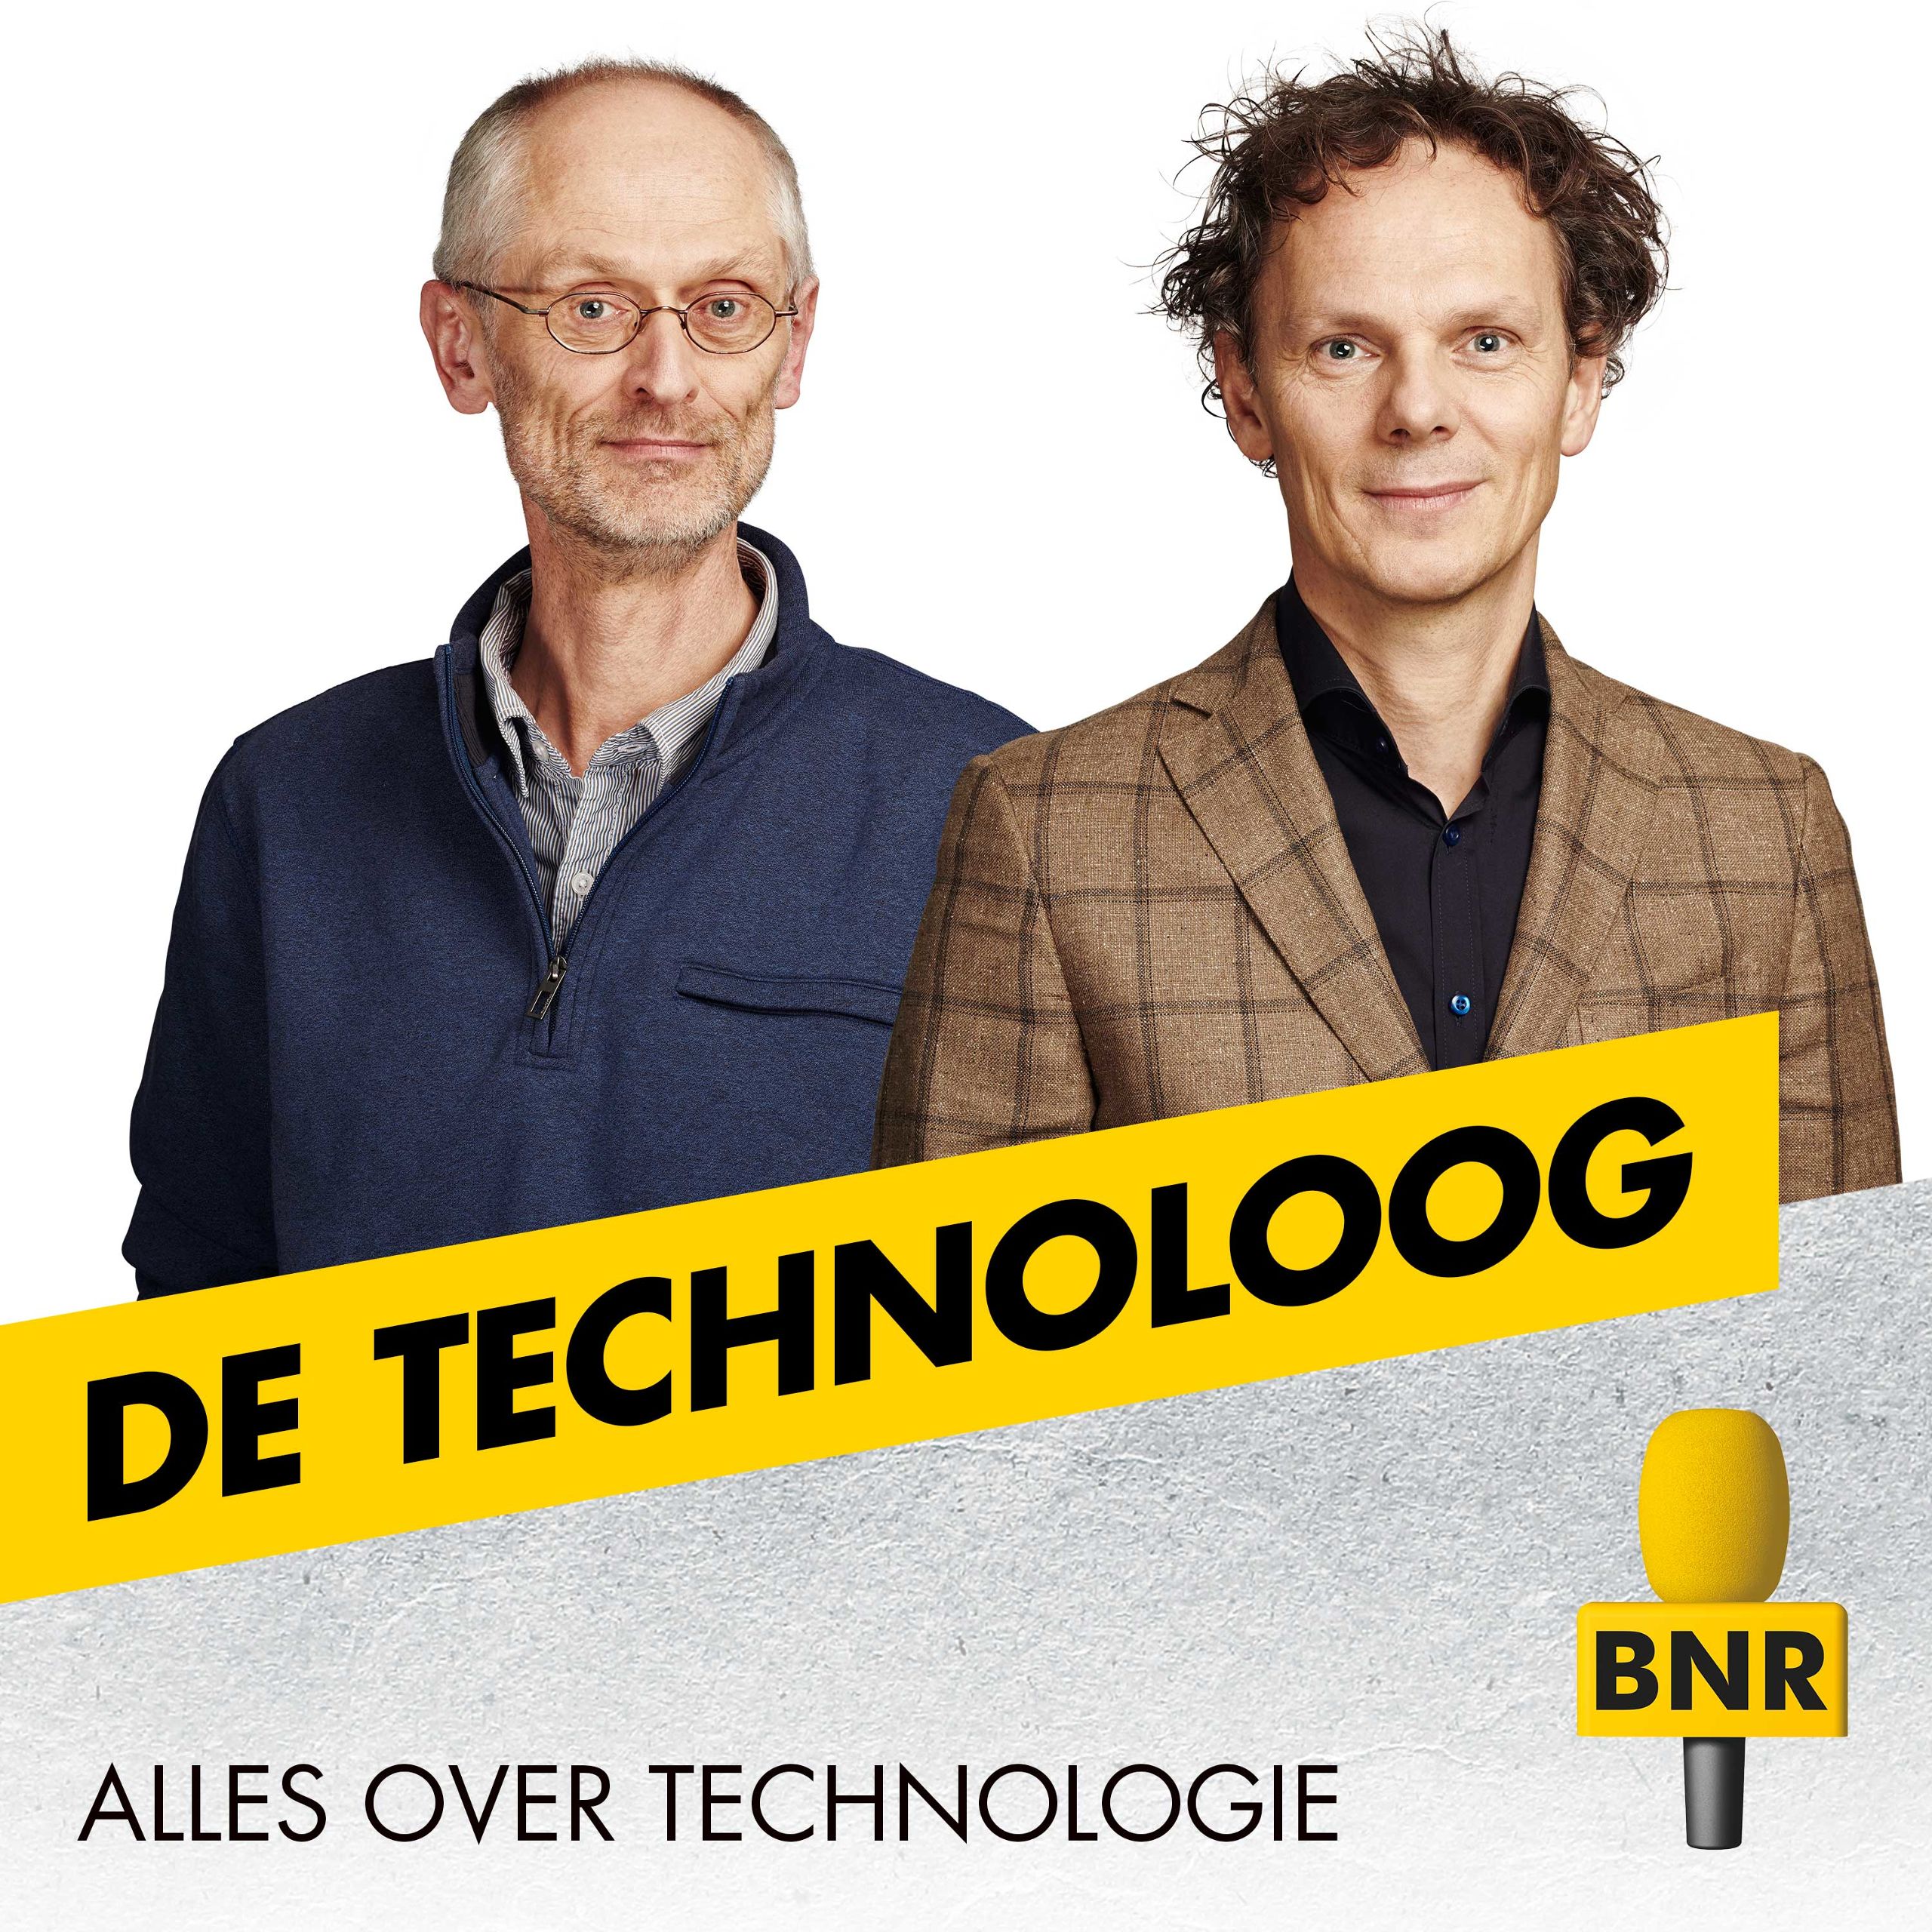 De Technoloog is de wekelijkse podcast van BNR over technologie